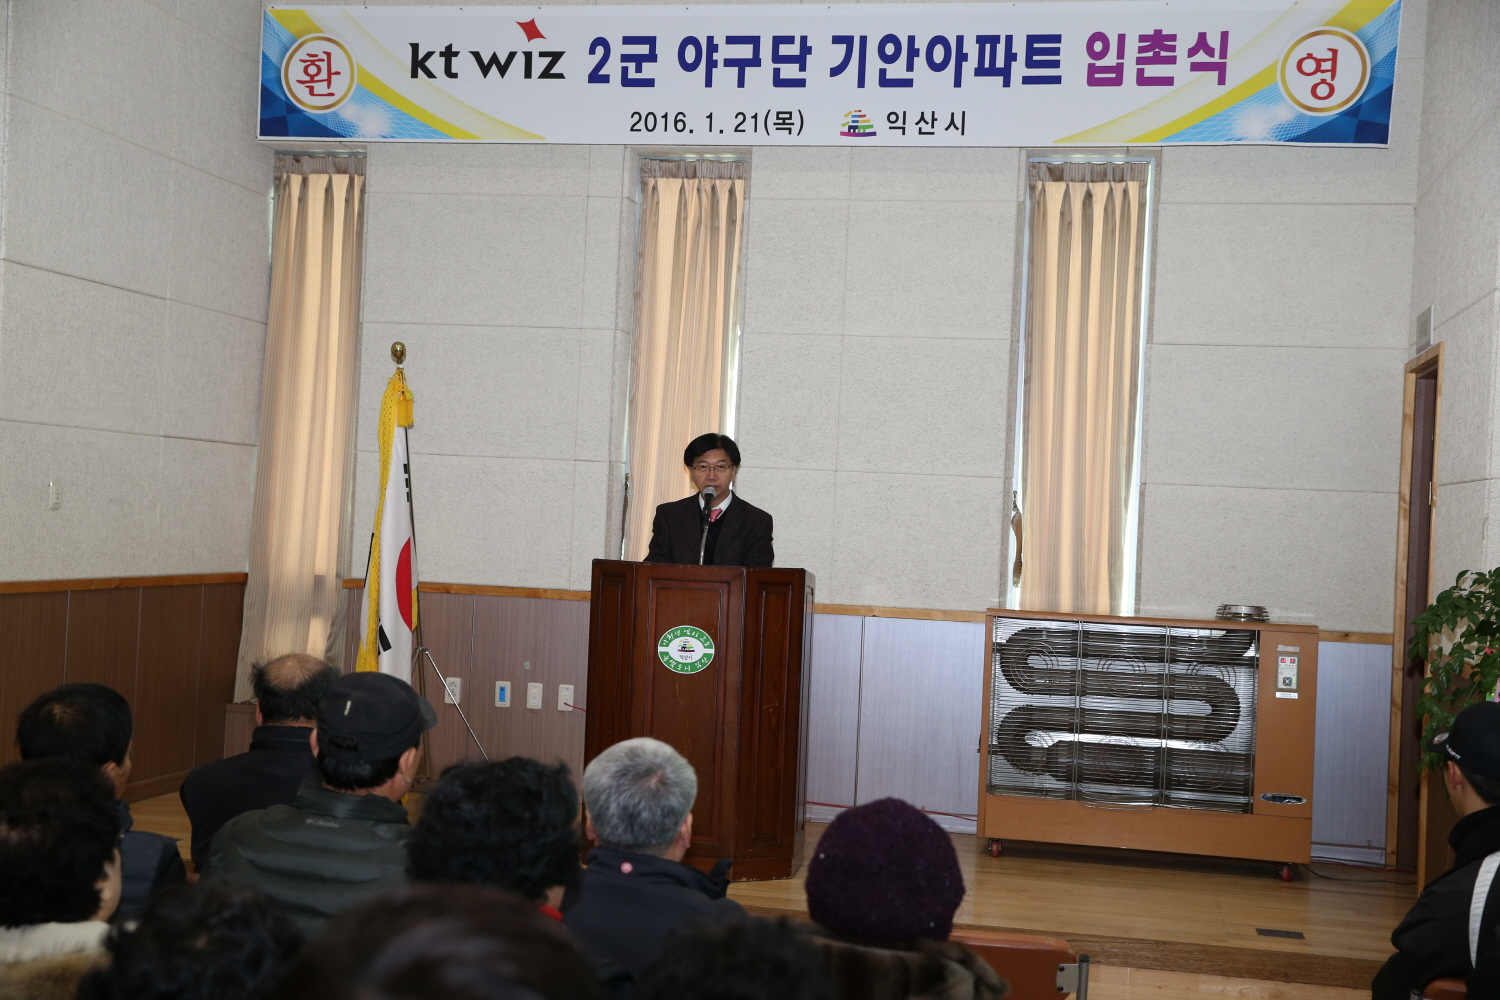 1월 21일 KT wiz 프로야구 2군선수단 입촌식2